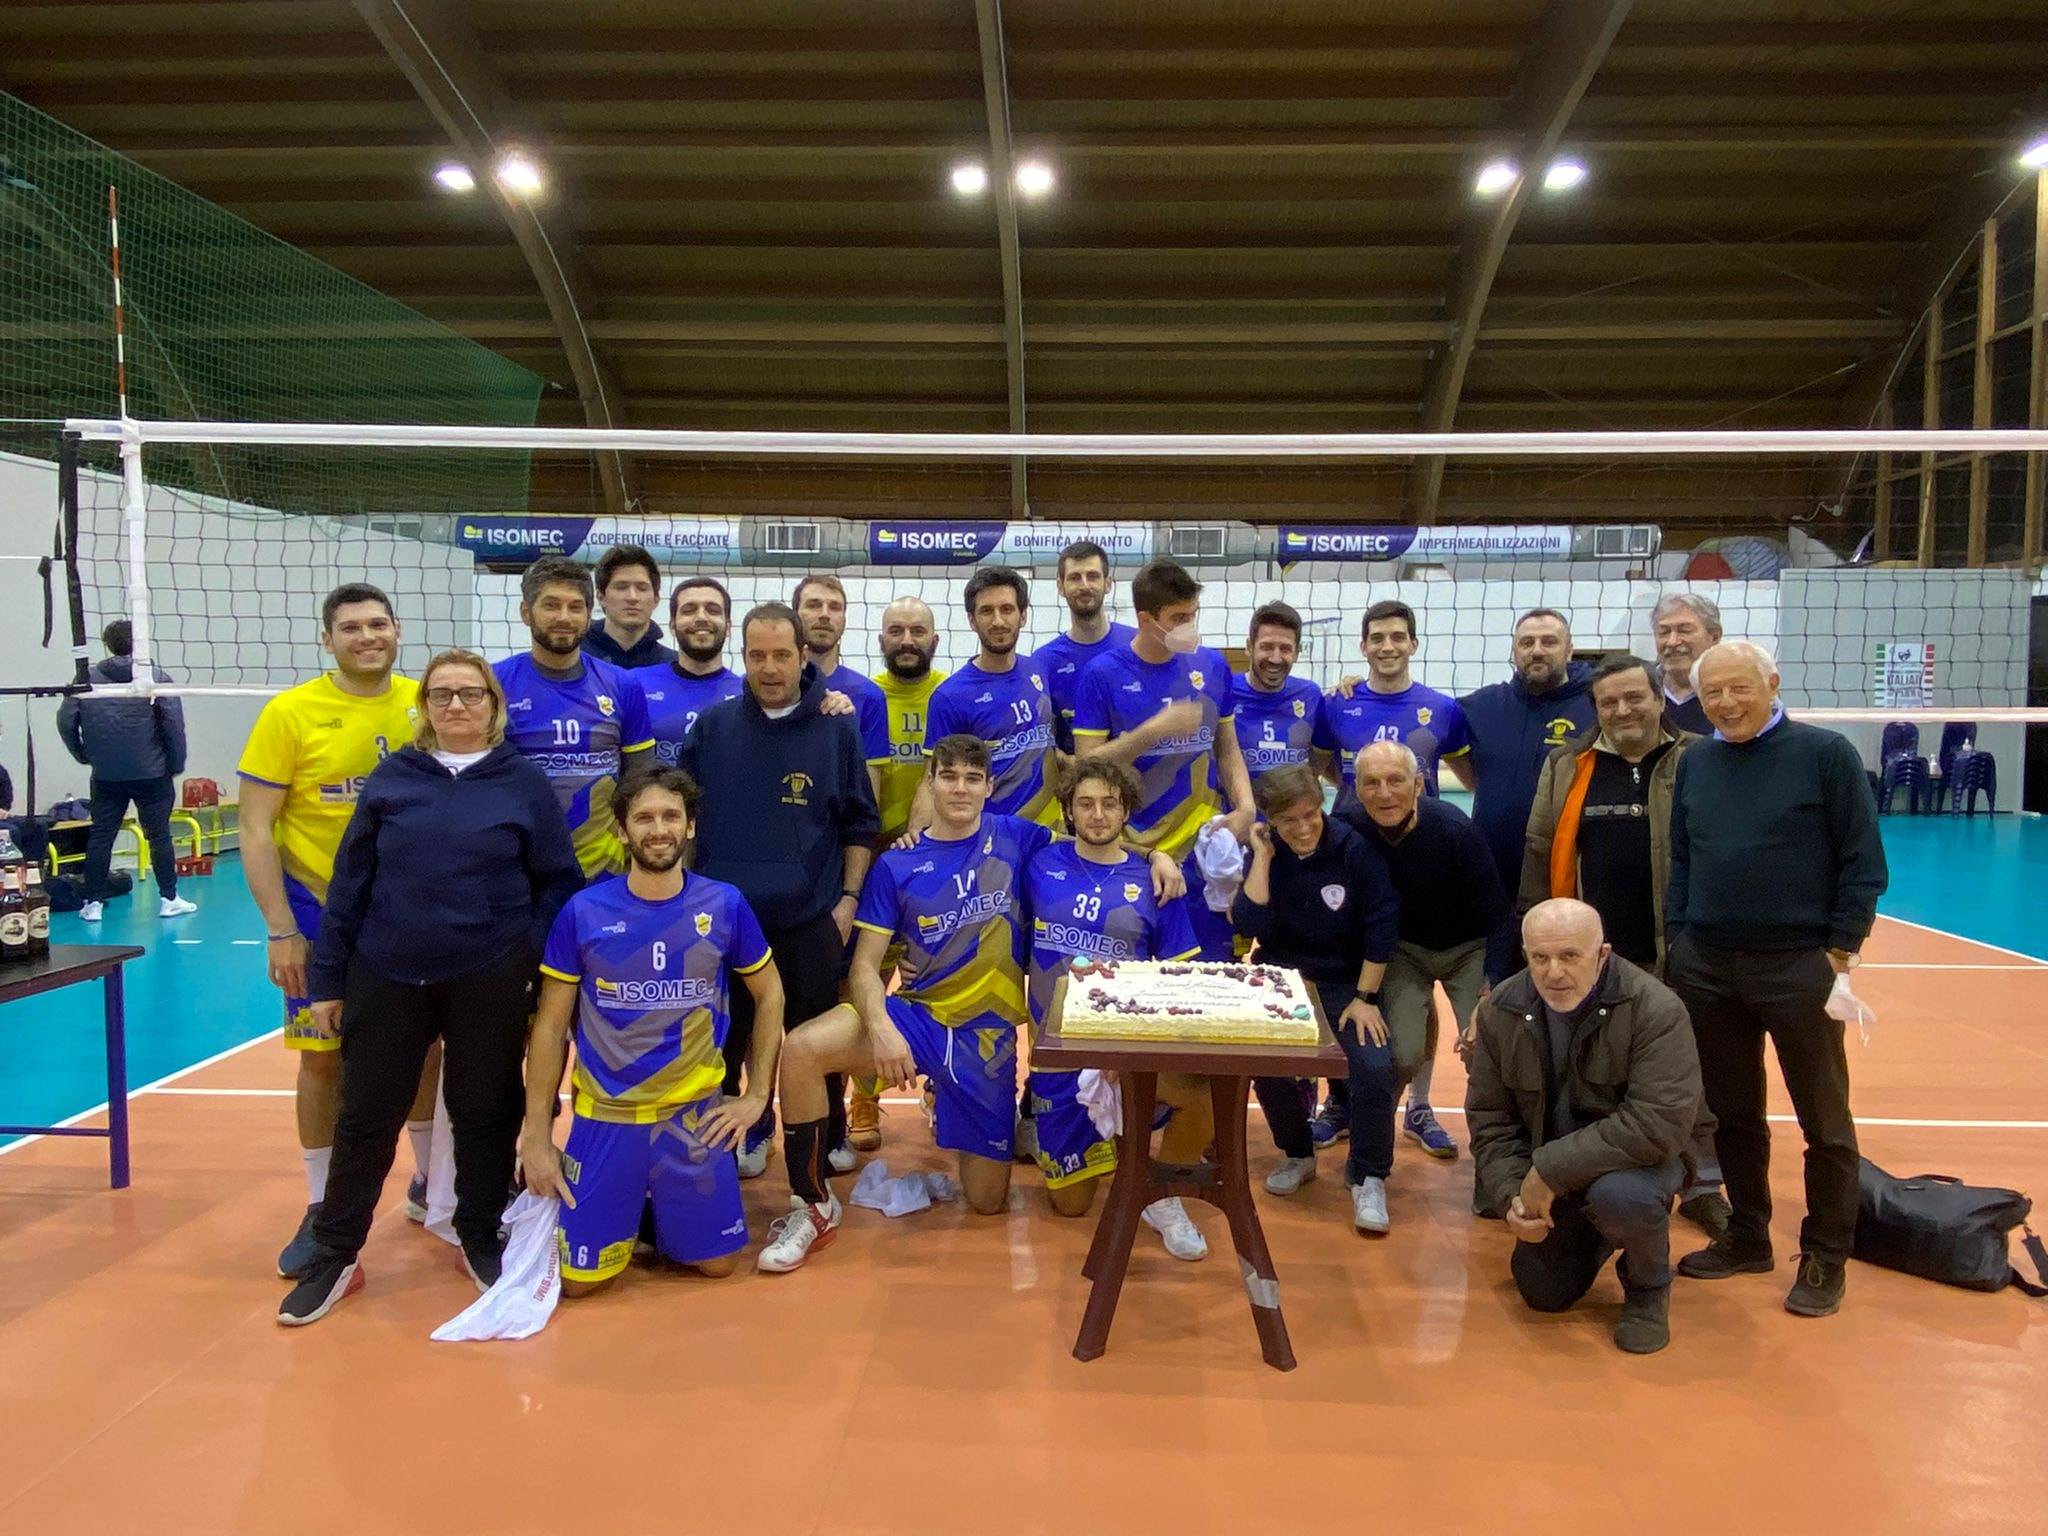 Serie Cm volley Il Circolo Inzani Isomec festeggia la vittoria contro Pieve Tricolore